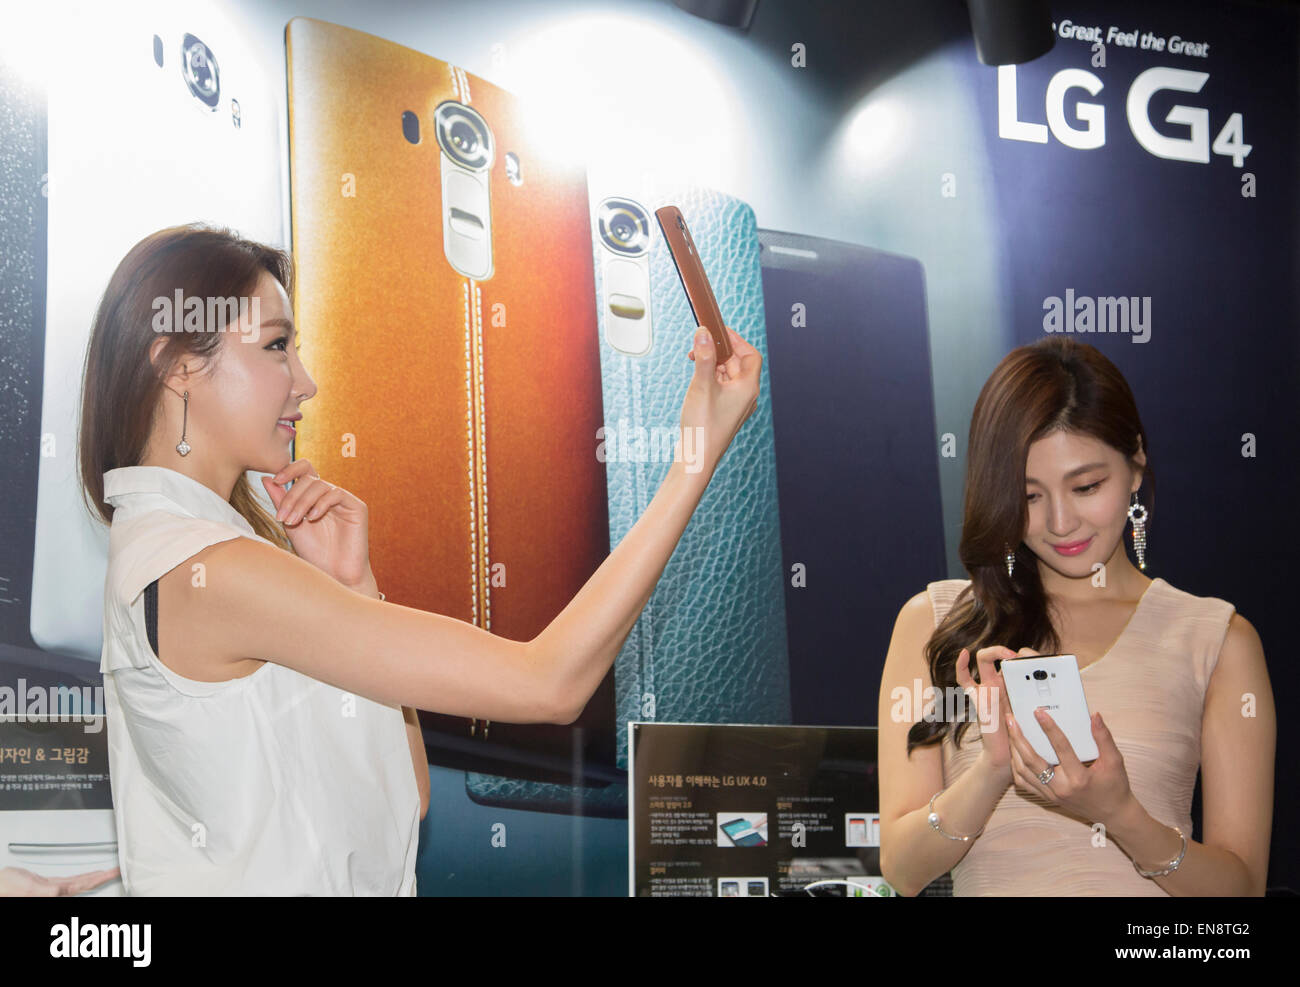 Séoul, Corée du Sud. 29 avril, 2015. Essayez les modèles LG Electronics G4 smartphones de Séoul, Corée du Sud. LG a présenté son nouveau G4 le mercredi, c'est équipé de 5,5 pouces IPS (in-plane switching) QHD écran, un processeur Qualcomm Snapdragon 808 avec X10 et une F LTE 1.8 Objectif de l'appareil. Le nouveau smartphone fonctionne sur Google Android 5.1 Lollipop et ses prix local est d'environ 770 $US, selon les médias locaux. Credit : Lee Jae-Won/AFLO/Alamy Live News Banque D'Images